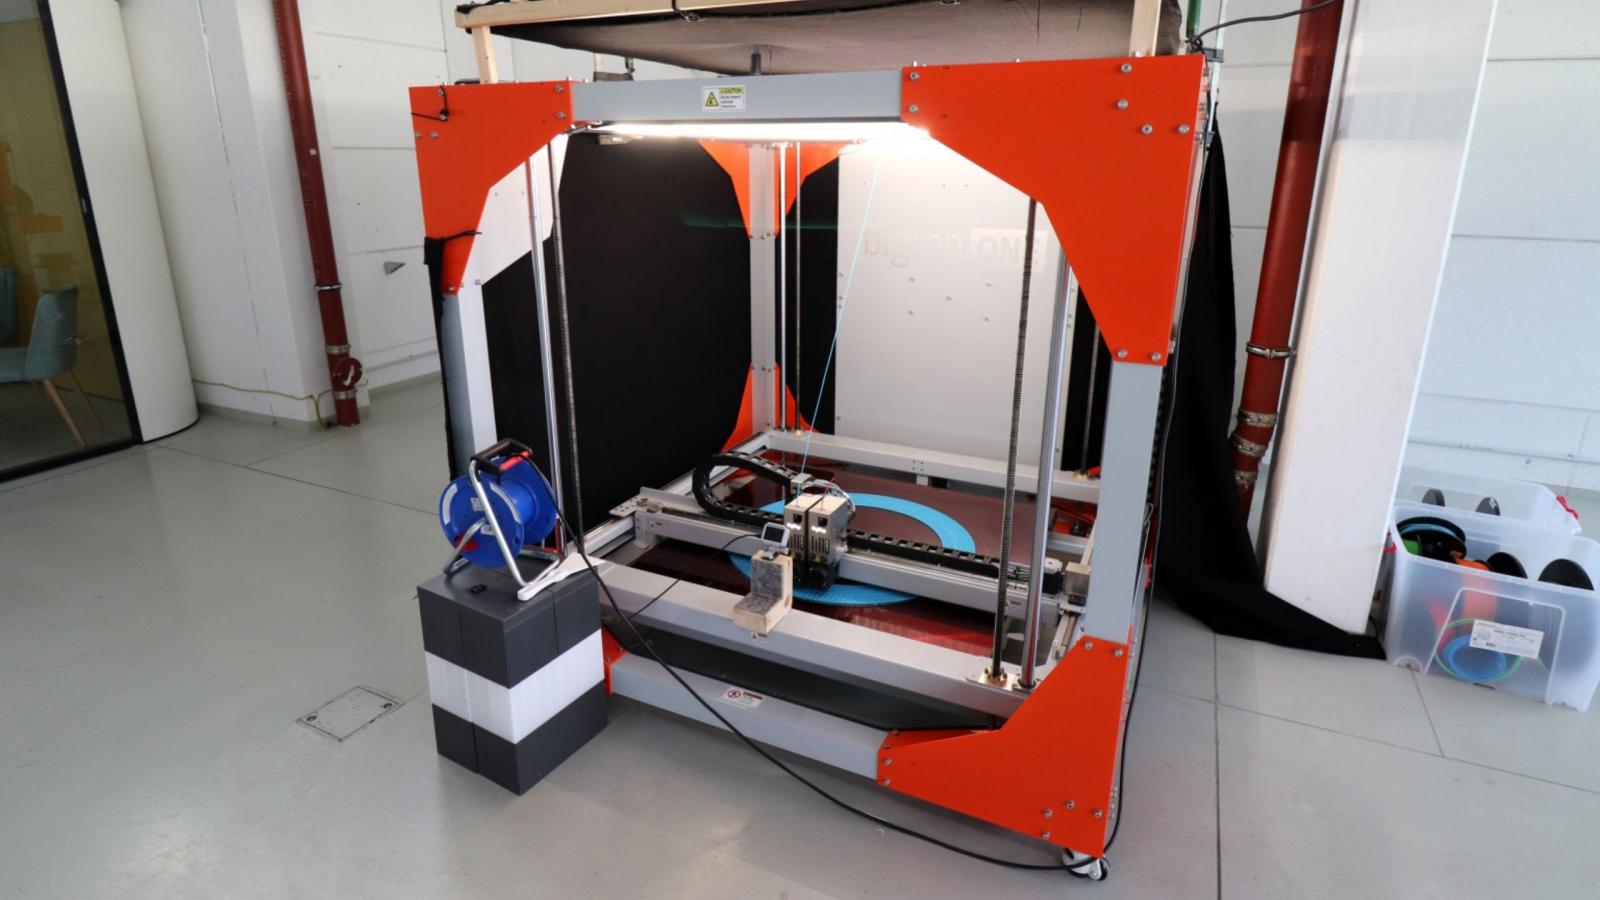 Foto eines 3D-Druckers innerhalb der Präsenzstelle des Forschungsprojekts "Präsenzstelle Luckenwalde"